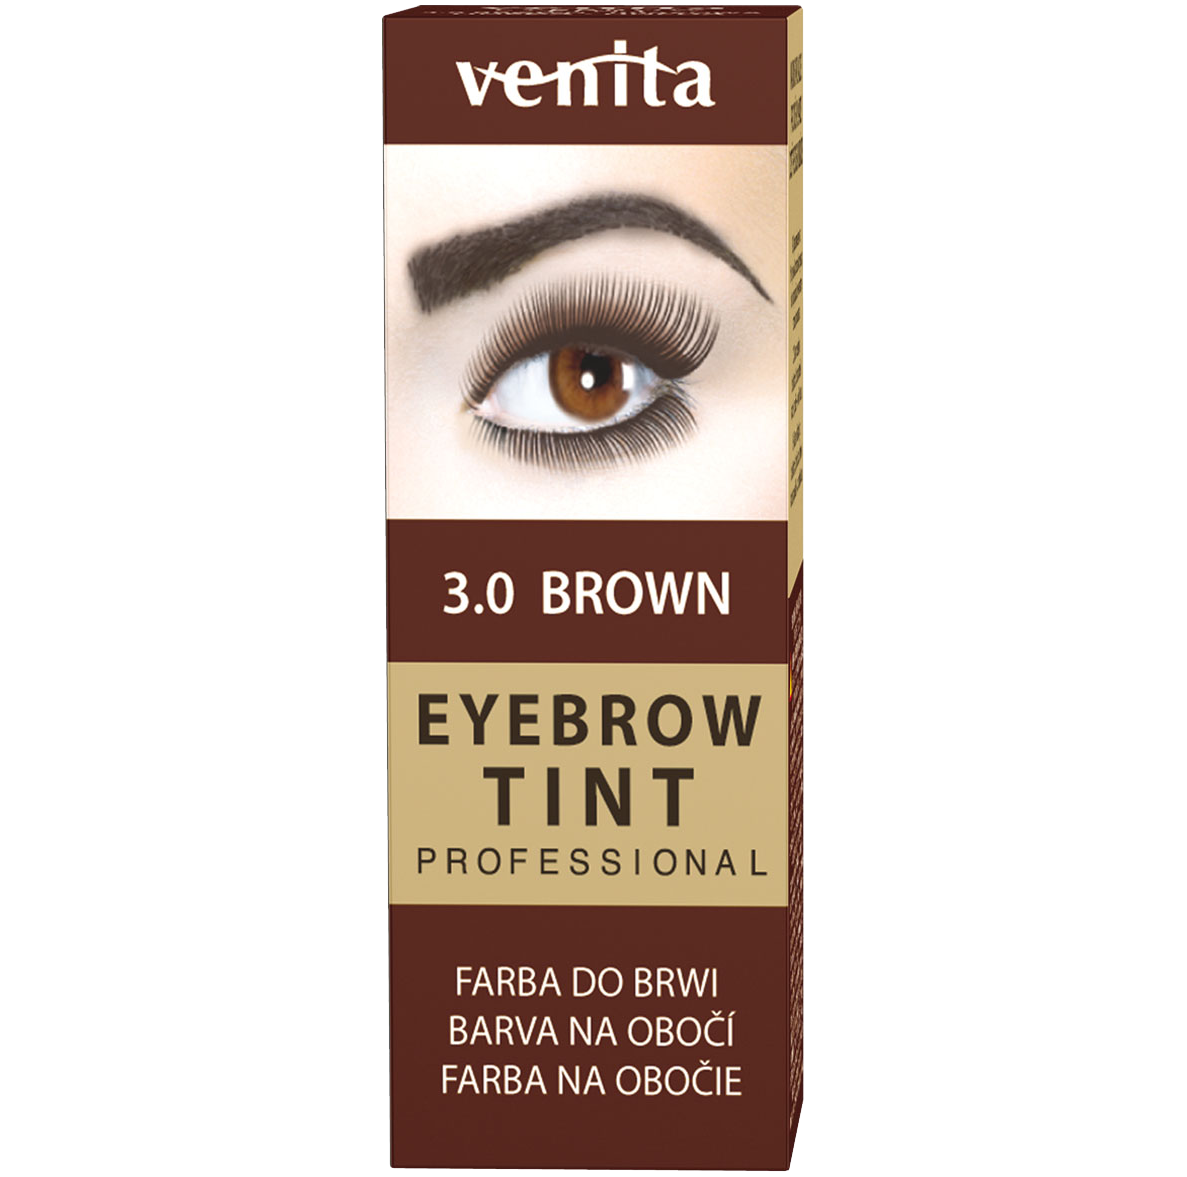 Venita Eyebrow Tint